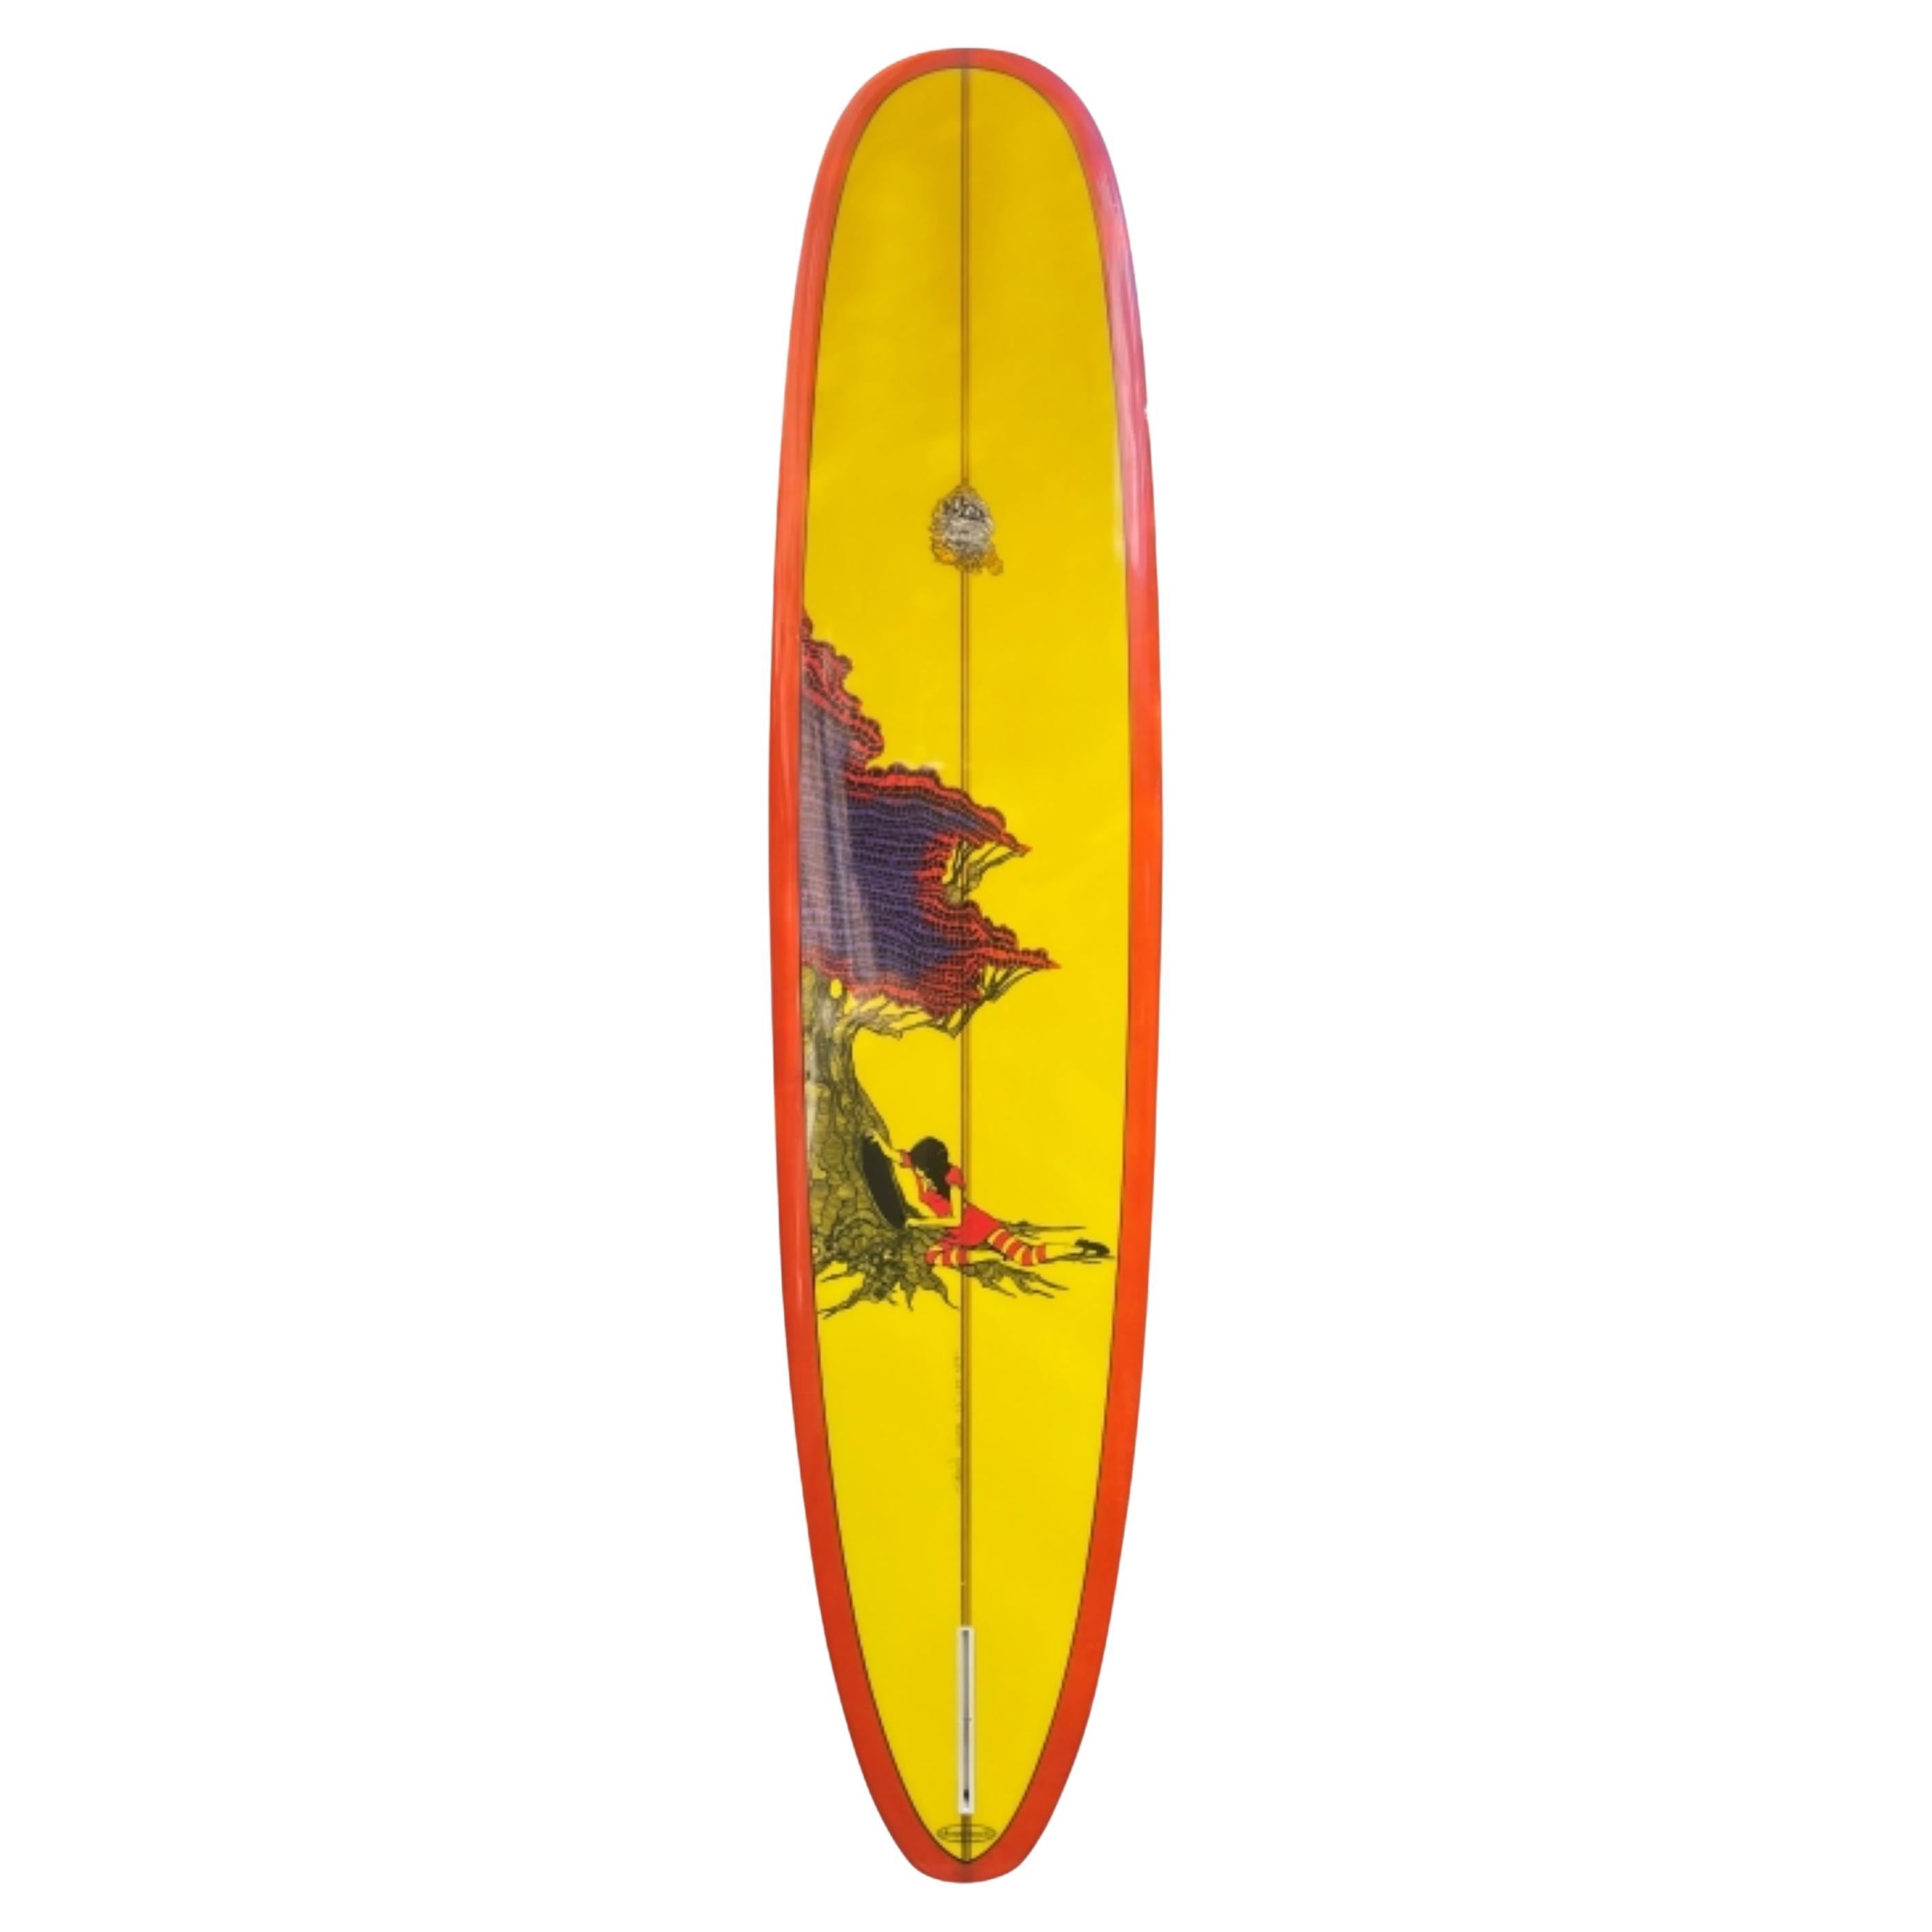 Hobie Surfboards Longboard Tyler Warren Artwork Shaped by the Late Terry Martin